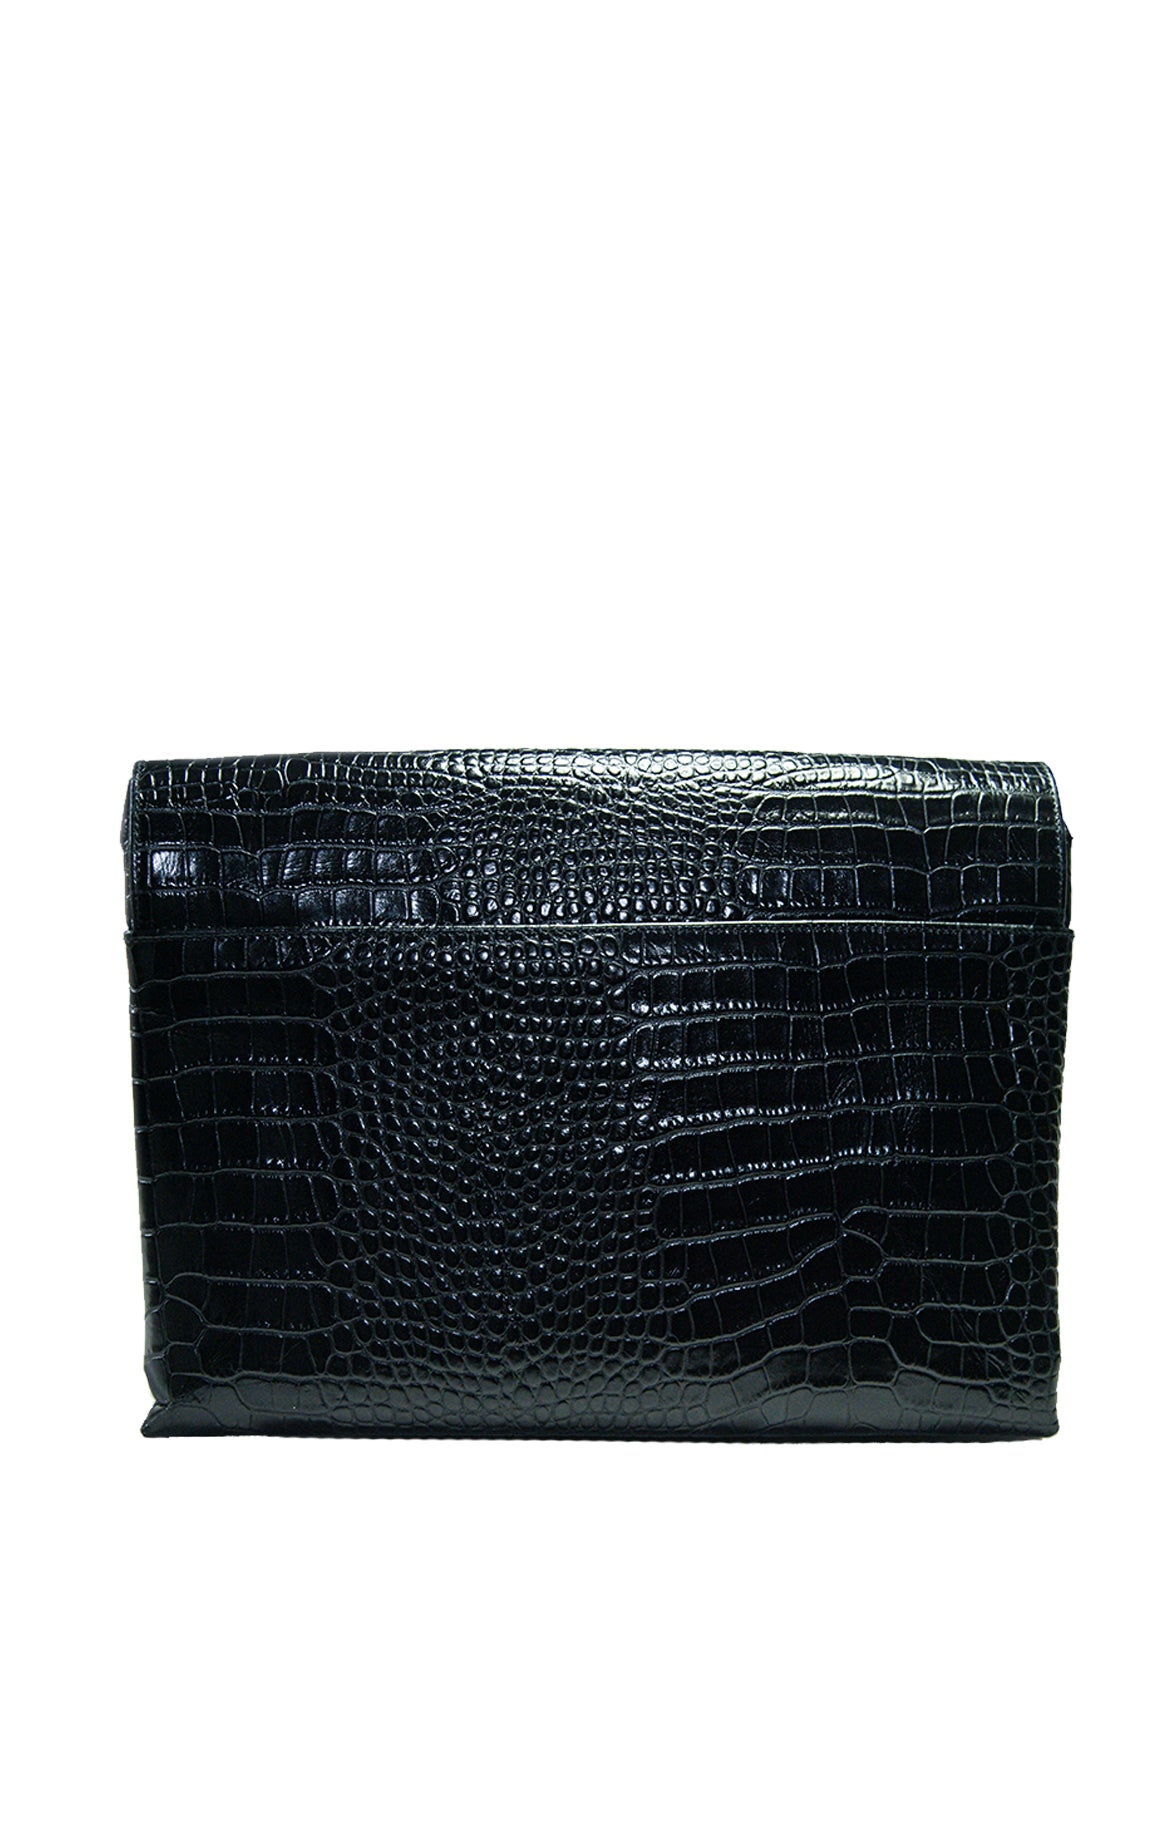 Black Key Clutch Leather Bag